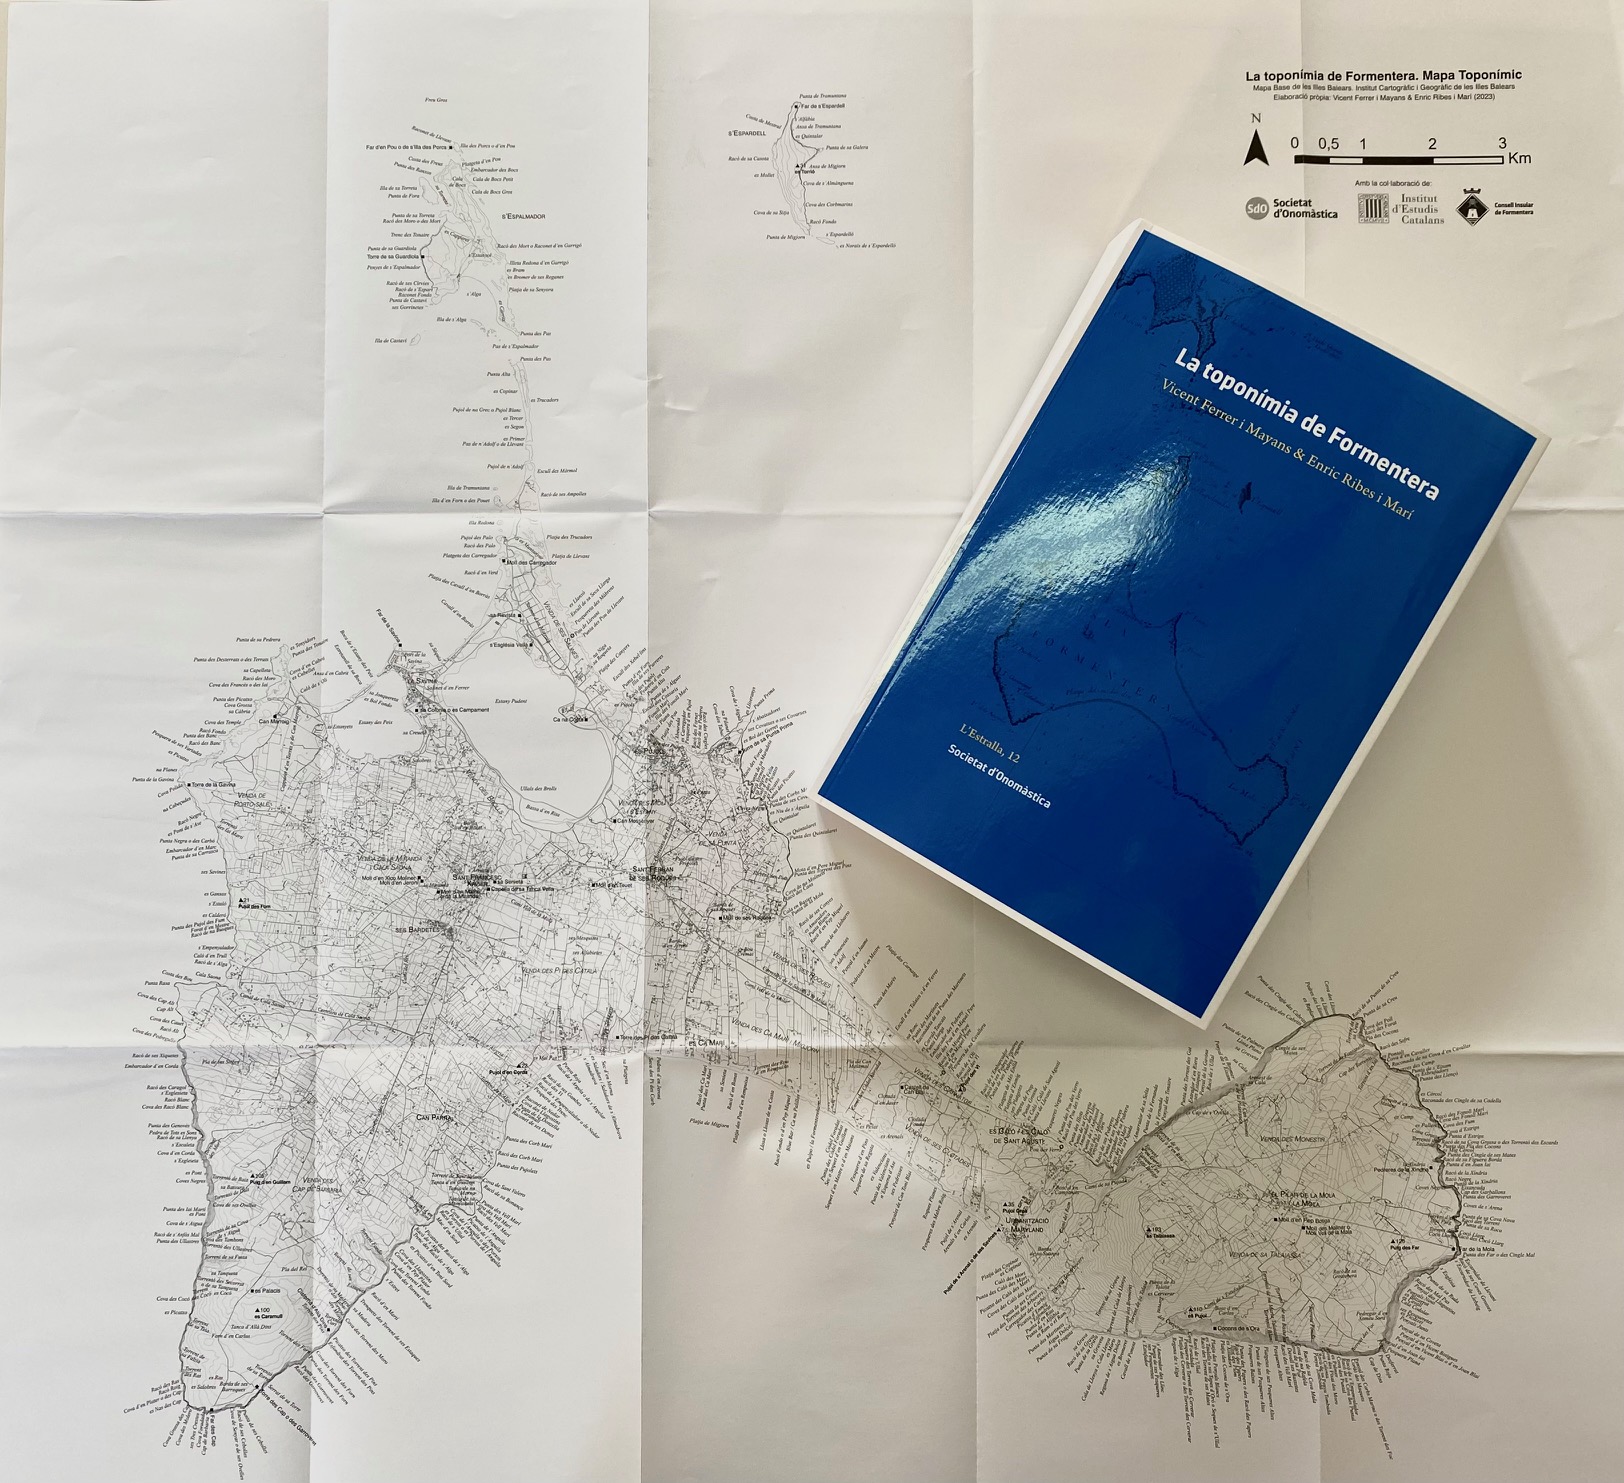 Tots els topònims i microtopònims de Formentera, agrupats en un volum de 900 pàgines